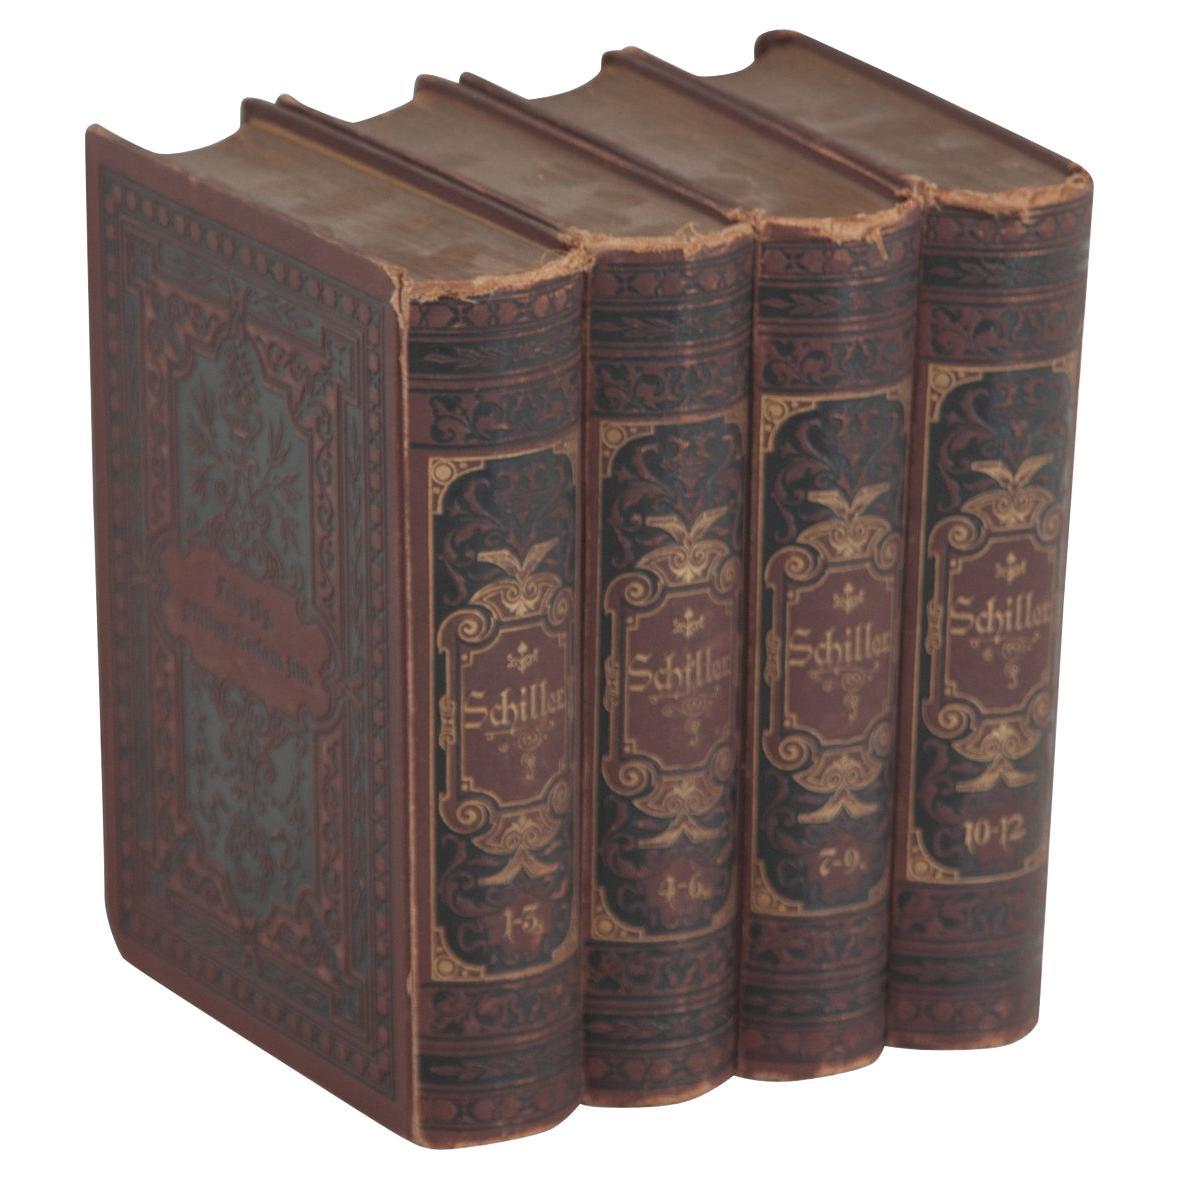 Set of 4 Books by German Poet Friedrich von Schiller